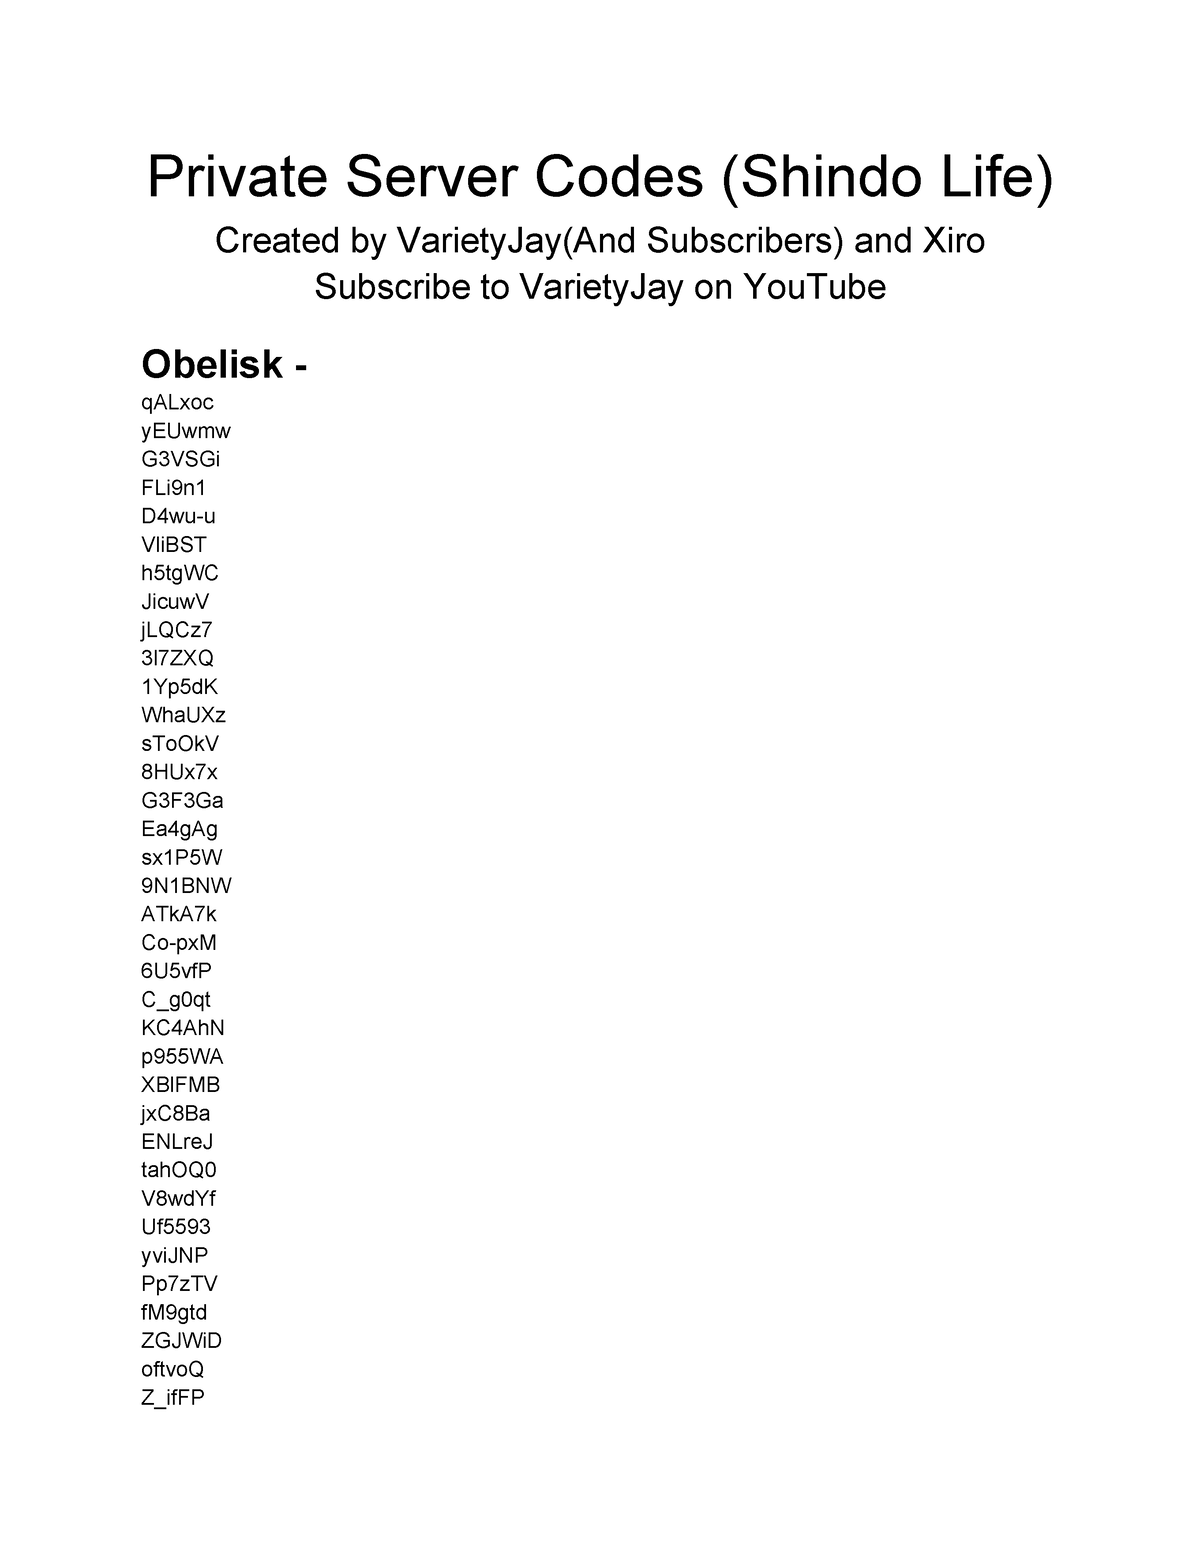 Shindo Life Private Server Codes Latest (2021) 